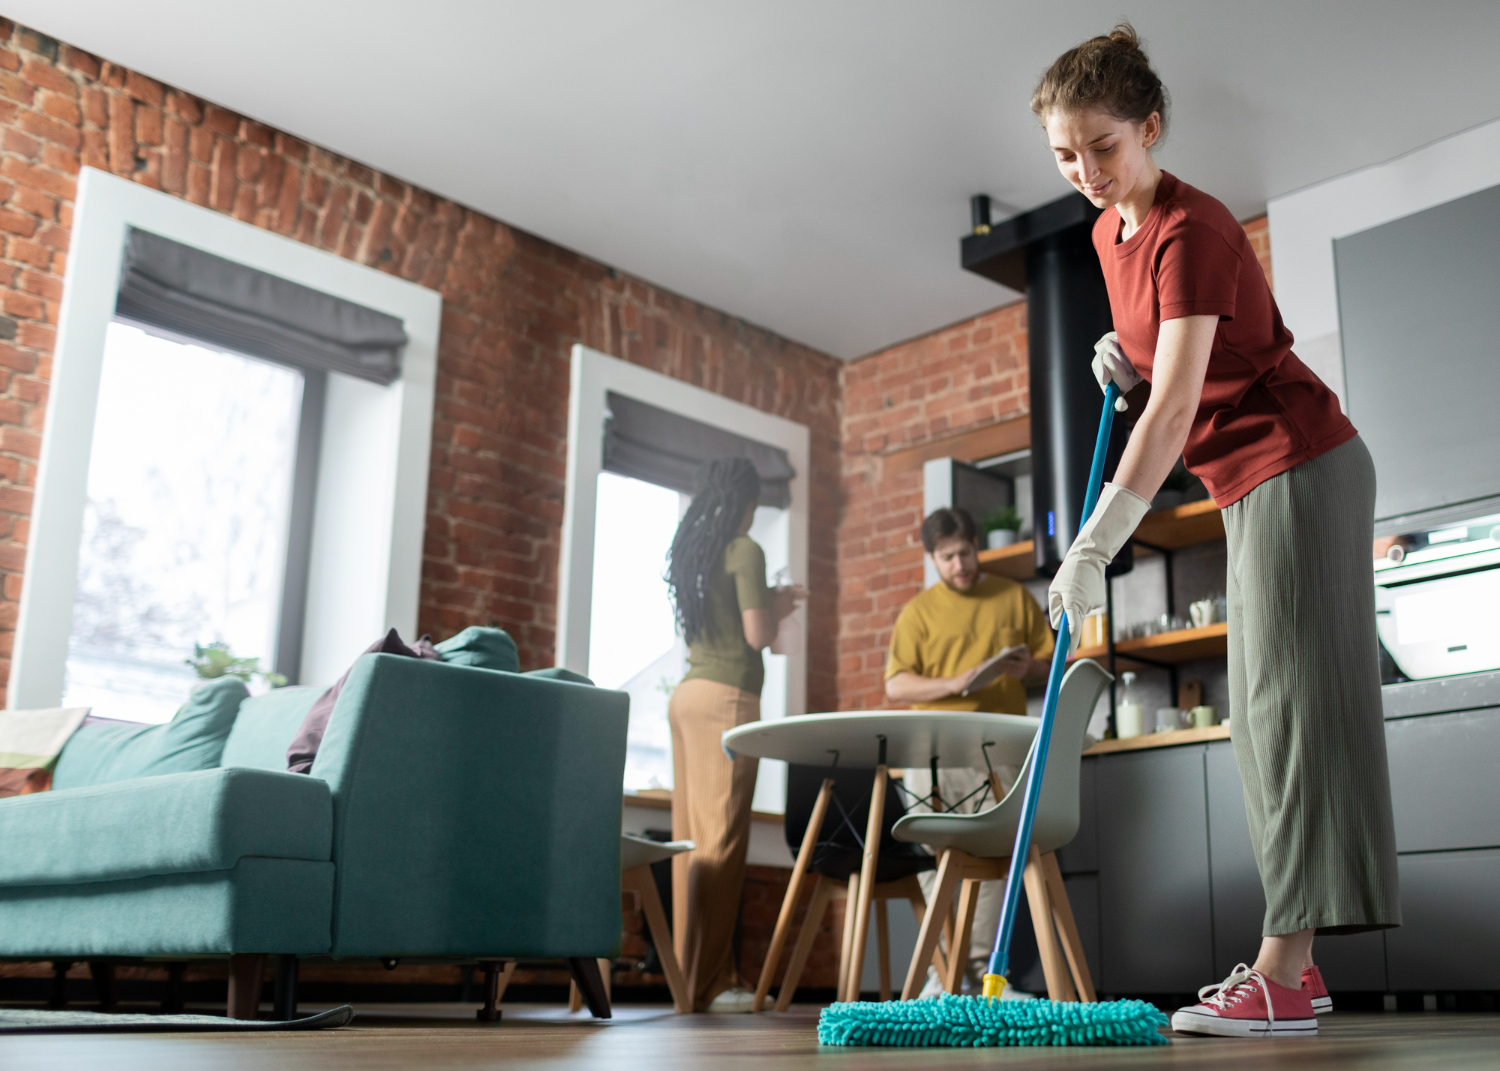 Domine a arte de gerenciar tarefas domésticas com eficiência e sem sobrecarga